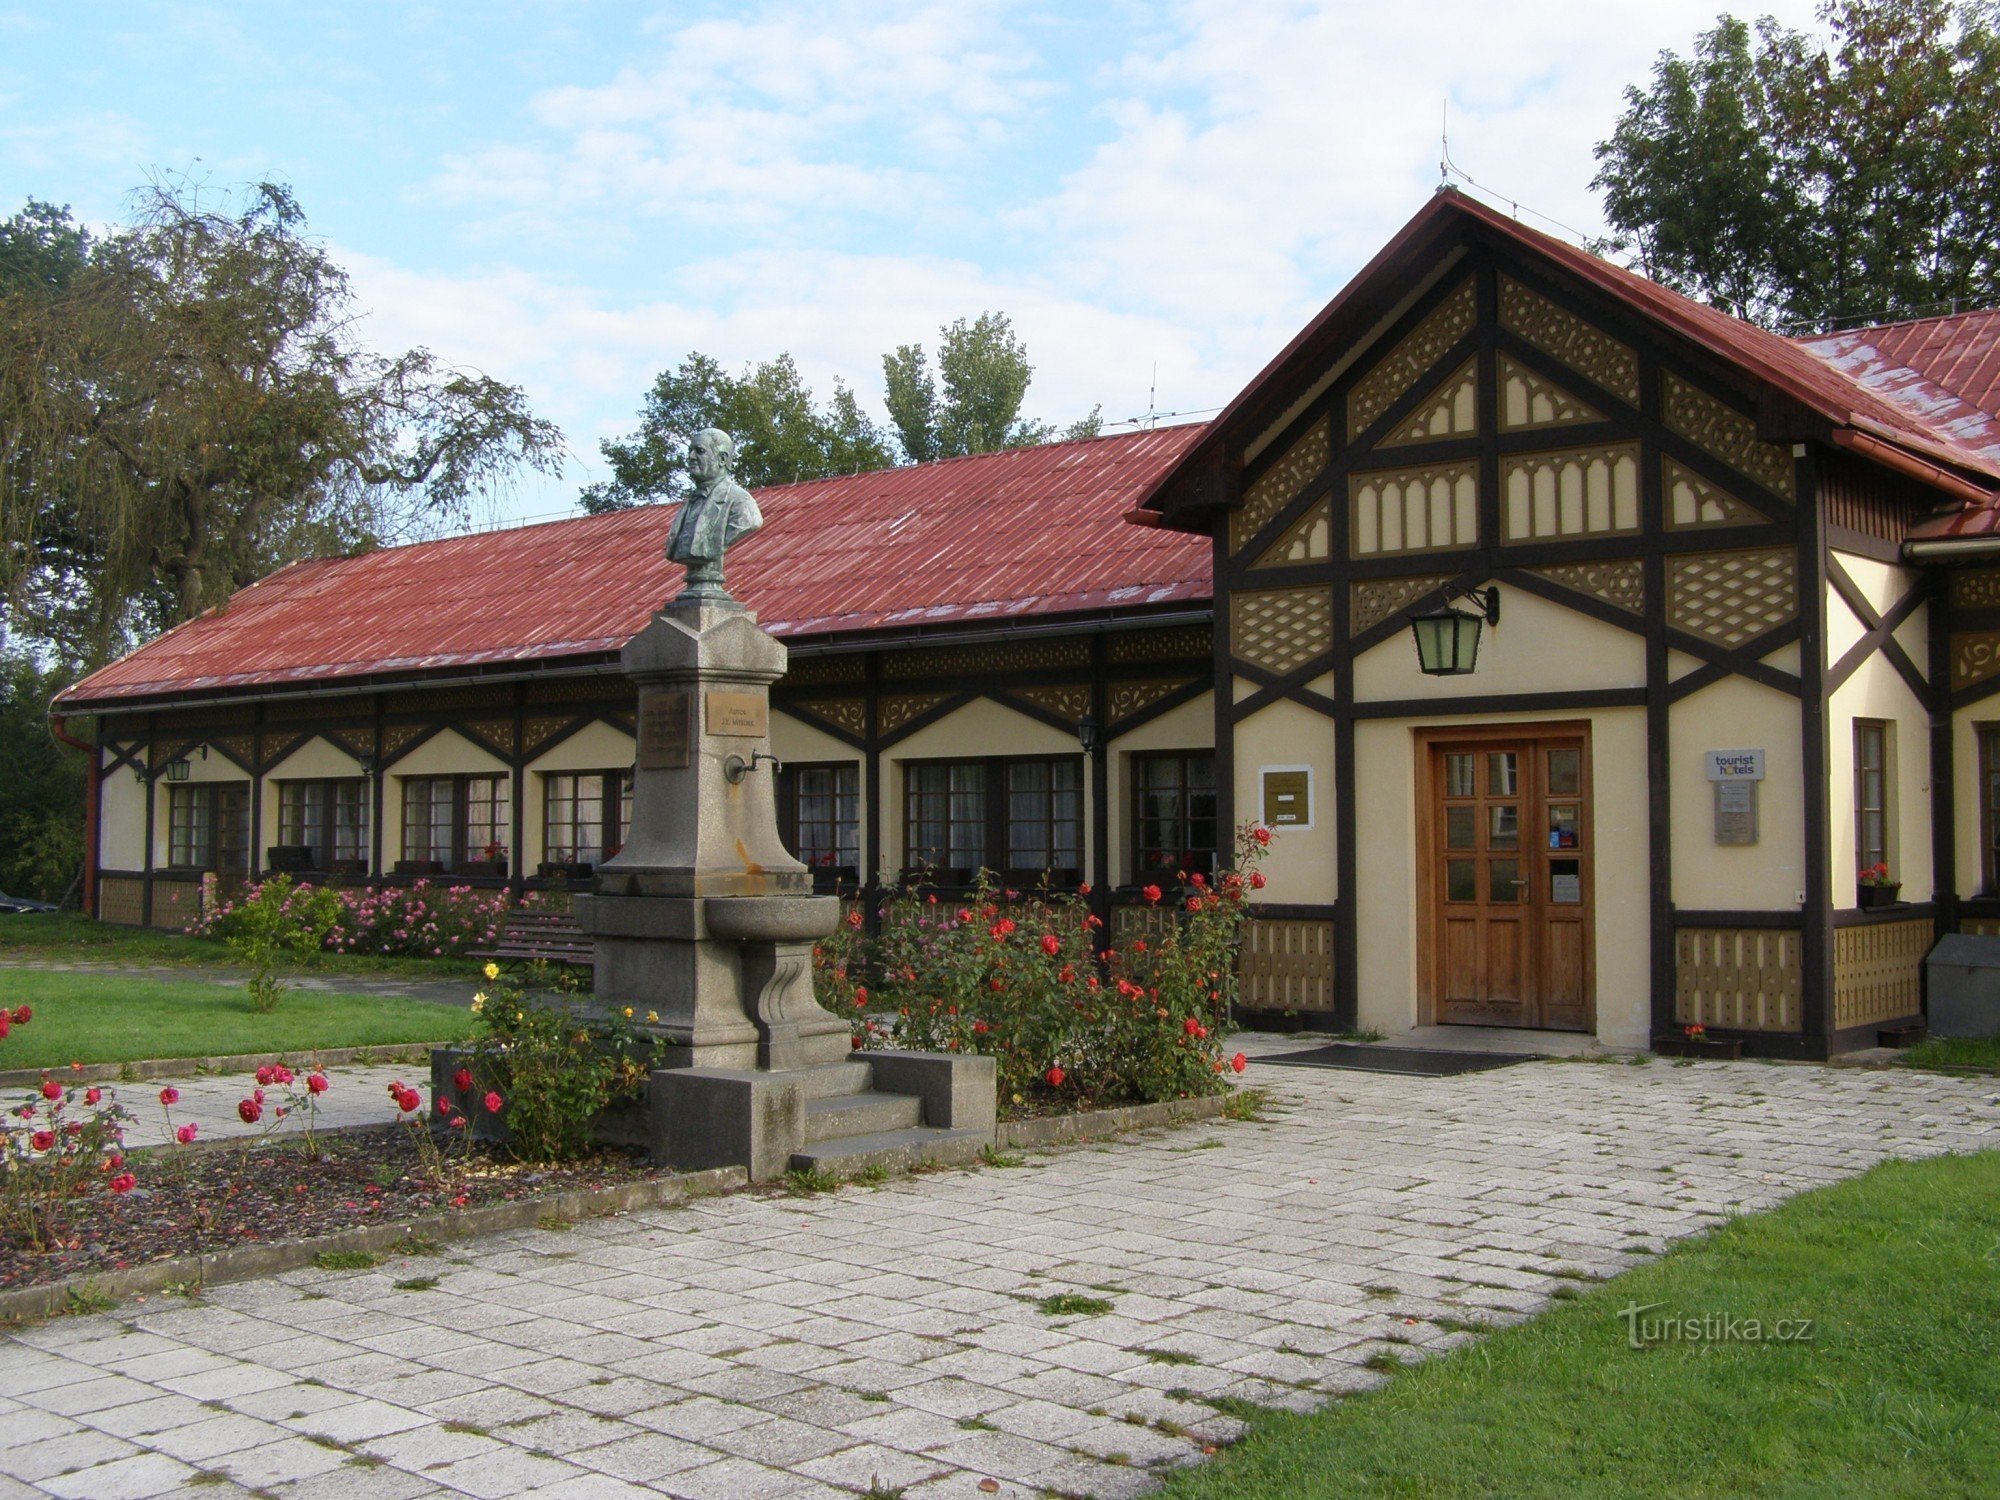 Седмигорки - памятник основателю мудр-курорта. Дворяне